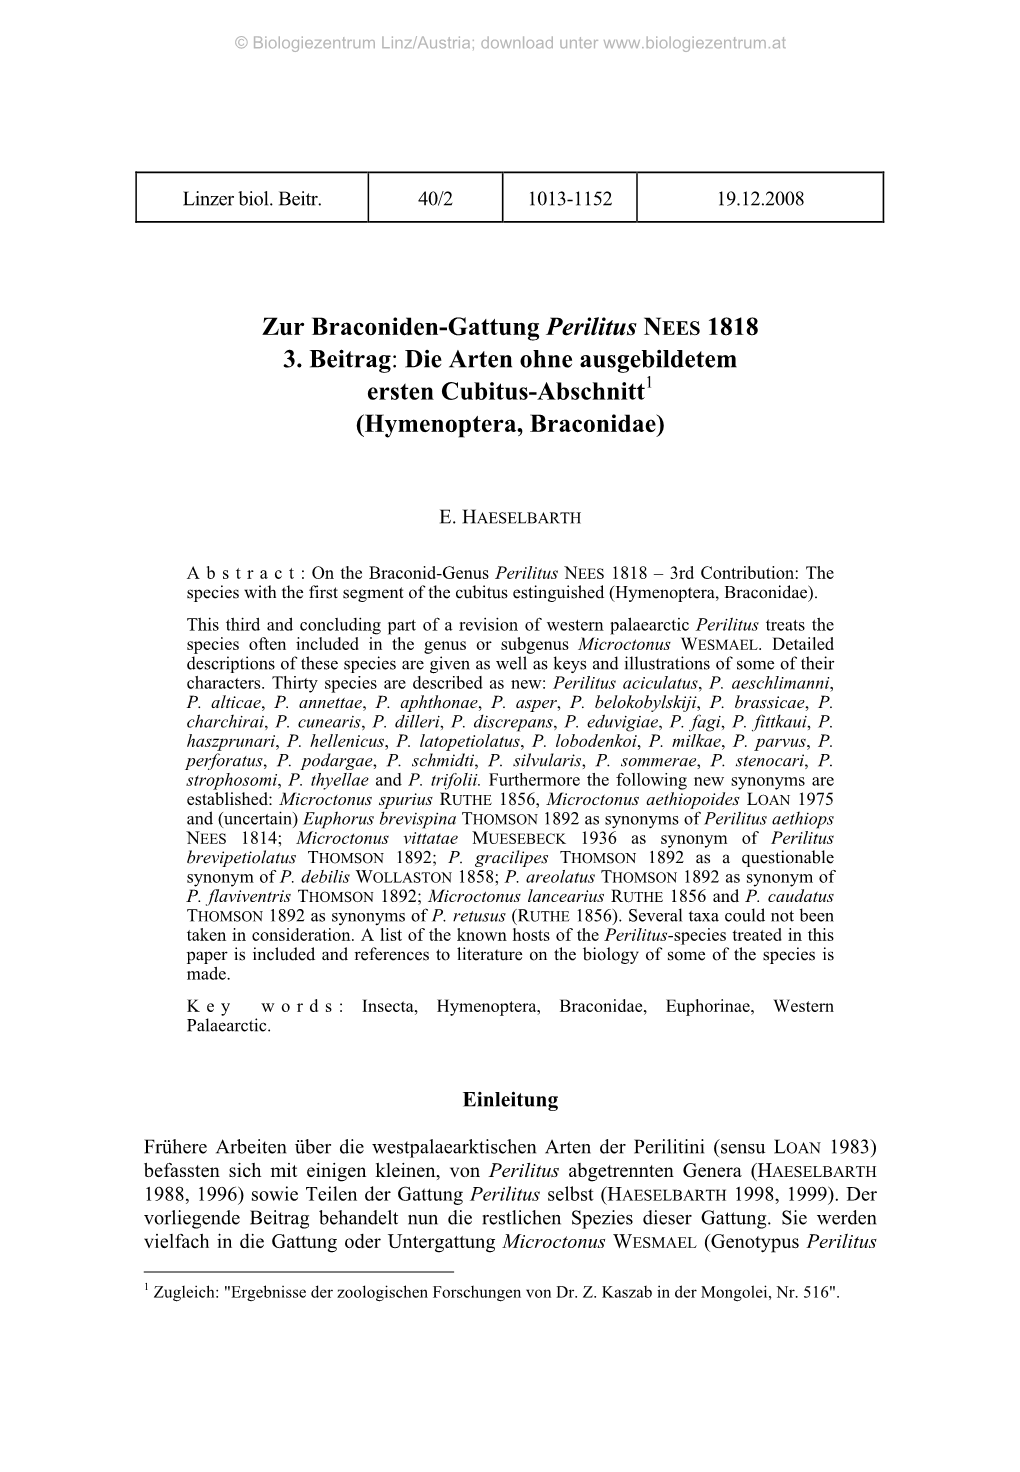 Zur Braconiden-Gattung Perilitus NEES 1818 3. Beitrag: Die Arten Ohne Ausgebildetem Ersten Cubitus-Abschnitt1 (Hymenoptera, Braconidae)